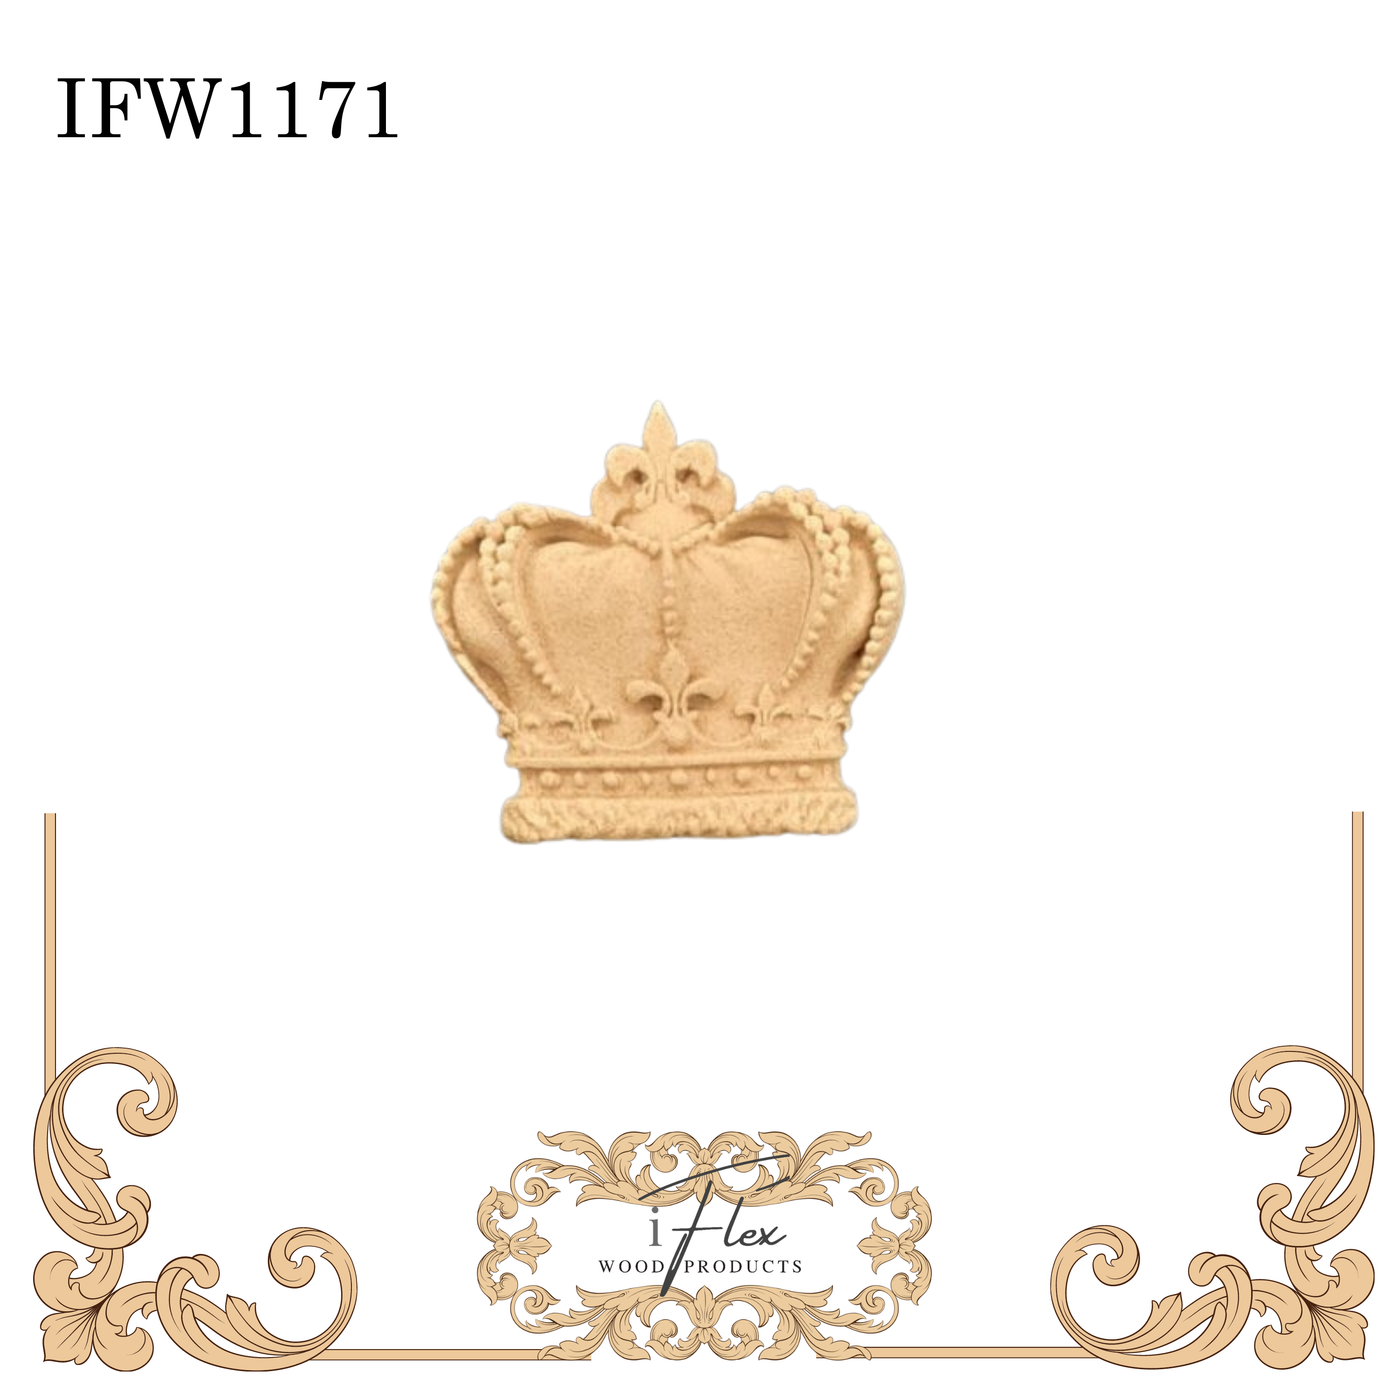 IFW 1171